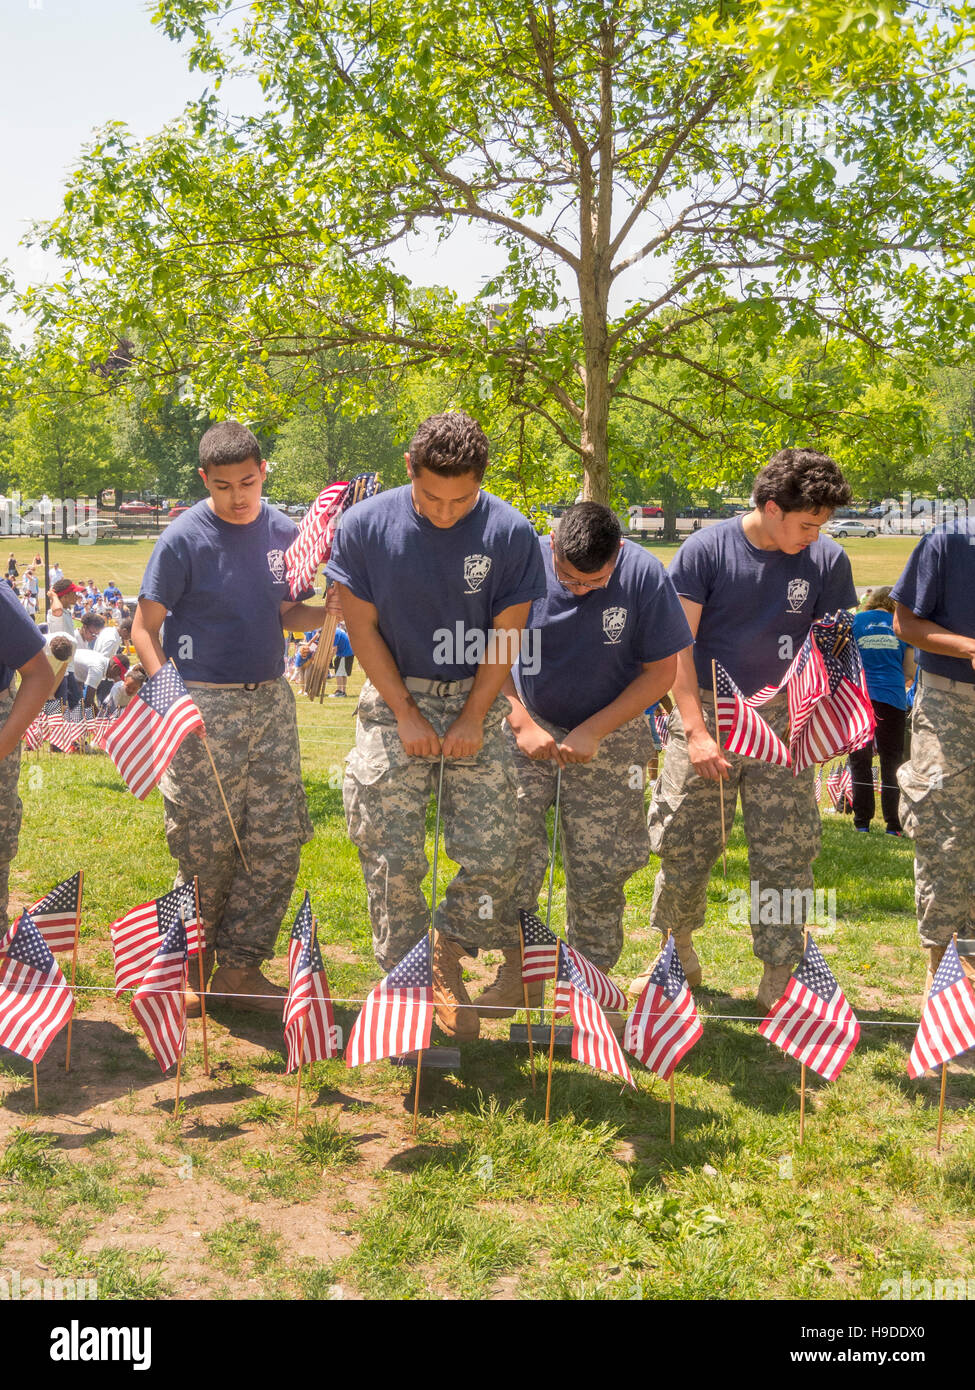 Militärische Tarnung tragen, arbeiten Hispanic ein High School Junior Reserve Officers Training Corps (ROTC) Programm auf eine Darstellung der amerikanischen Flagge auf Boston Common, Massachusetts bekämpfen Todesfälle für Memorial Day Gedenktage zu Ehren. Stockfoto